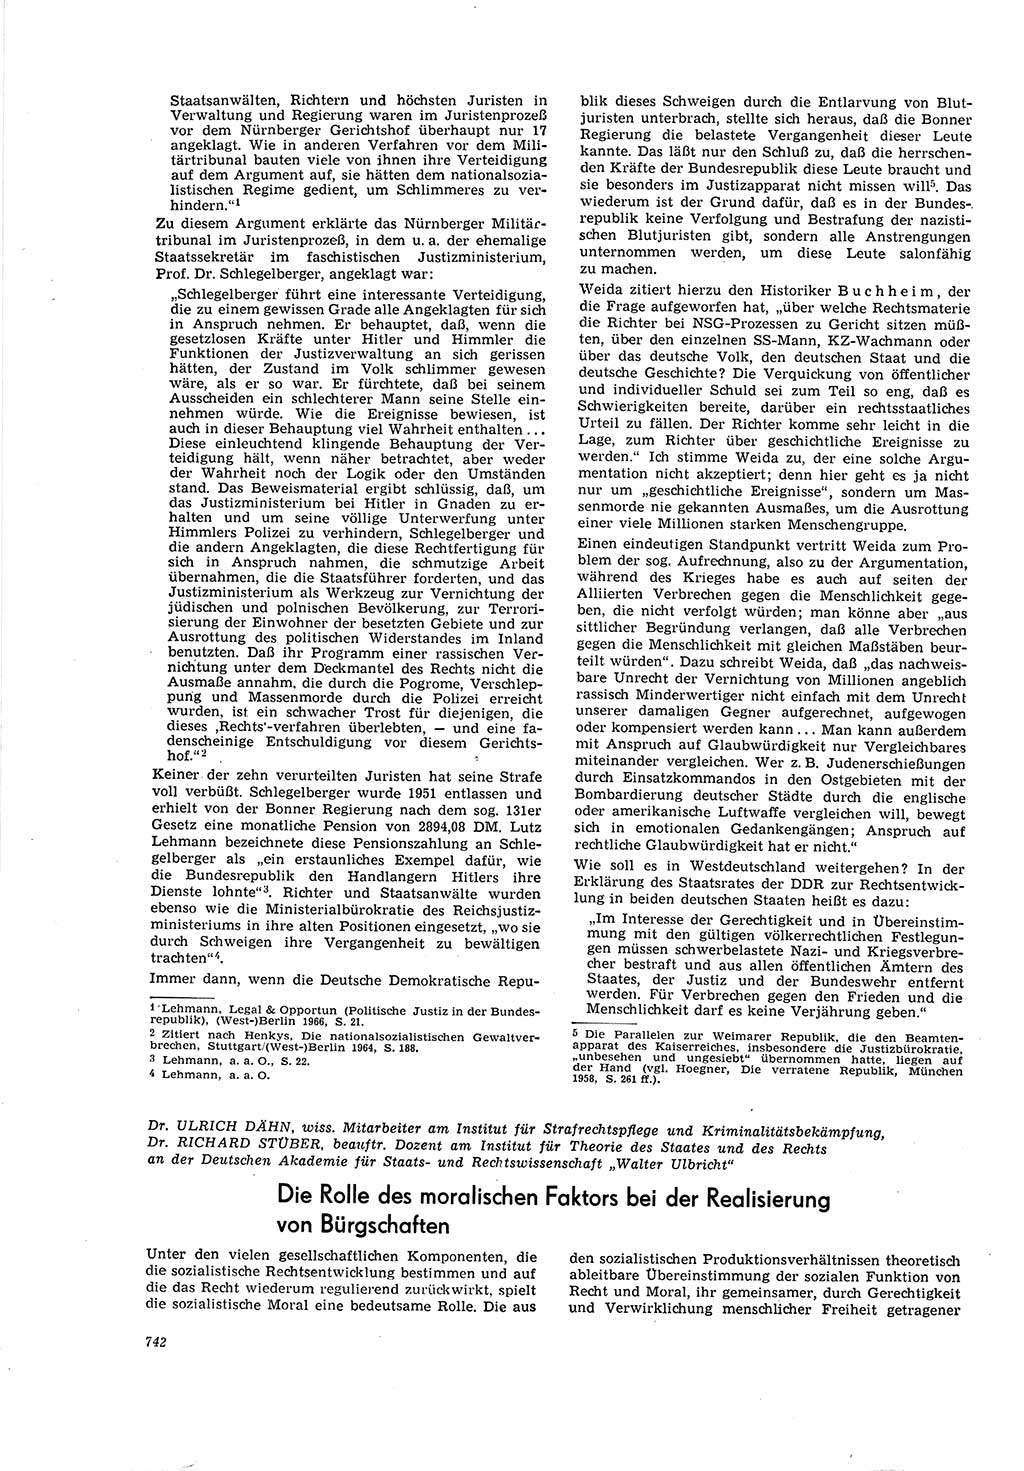 Neue Justiz (NJ), Zeitschrift für Recht und Rechtswissenschaft [Deutsche Demokratische Republik (DDR)], 20. Jahrgang 1966, Seite 742 (NJ DDR 1966, S. 742)